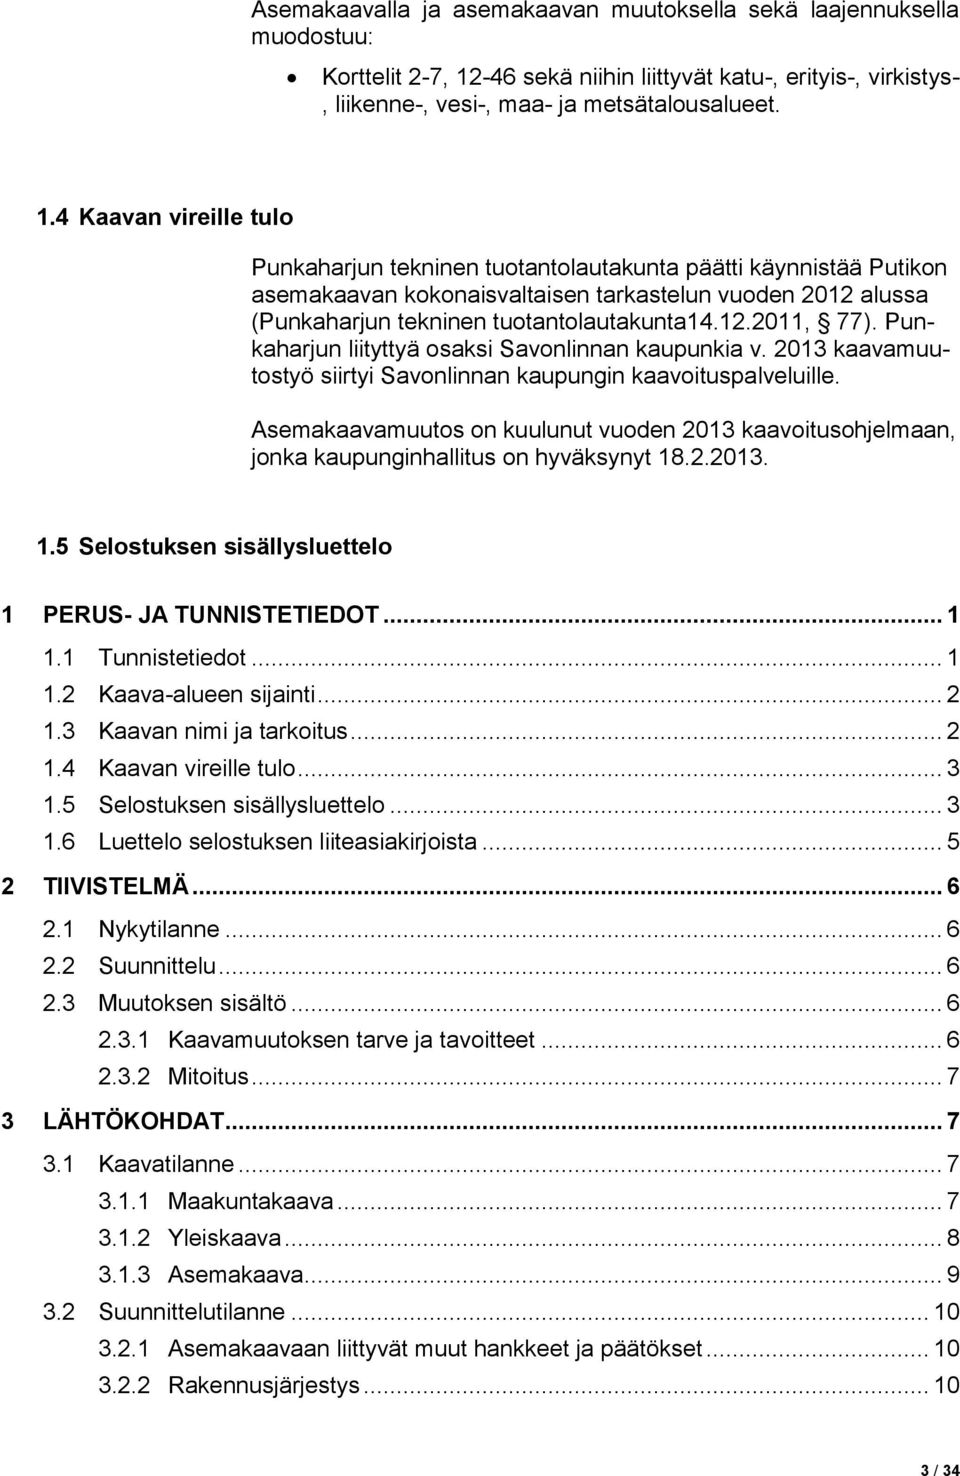 4 Kaavan vireille tulo Punkaharjun tekninen tuotantolautakunta päätti käynnistää Putikon asemakaavan kokonaisvaltaisen tarkastelun vuoden 2012 alussa (Punkaharjun tekninen tuotantolautakunta14.12.2011, 77).